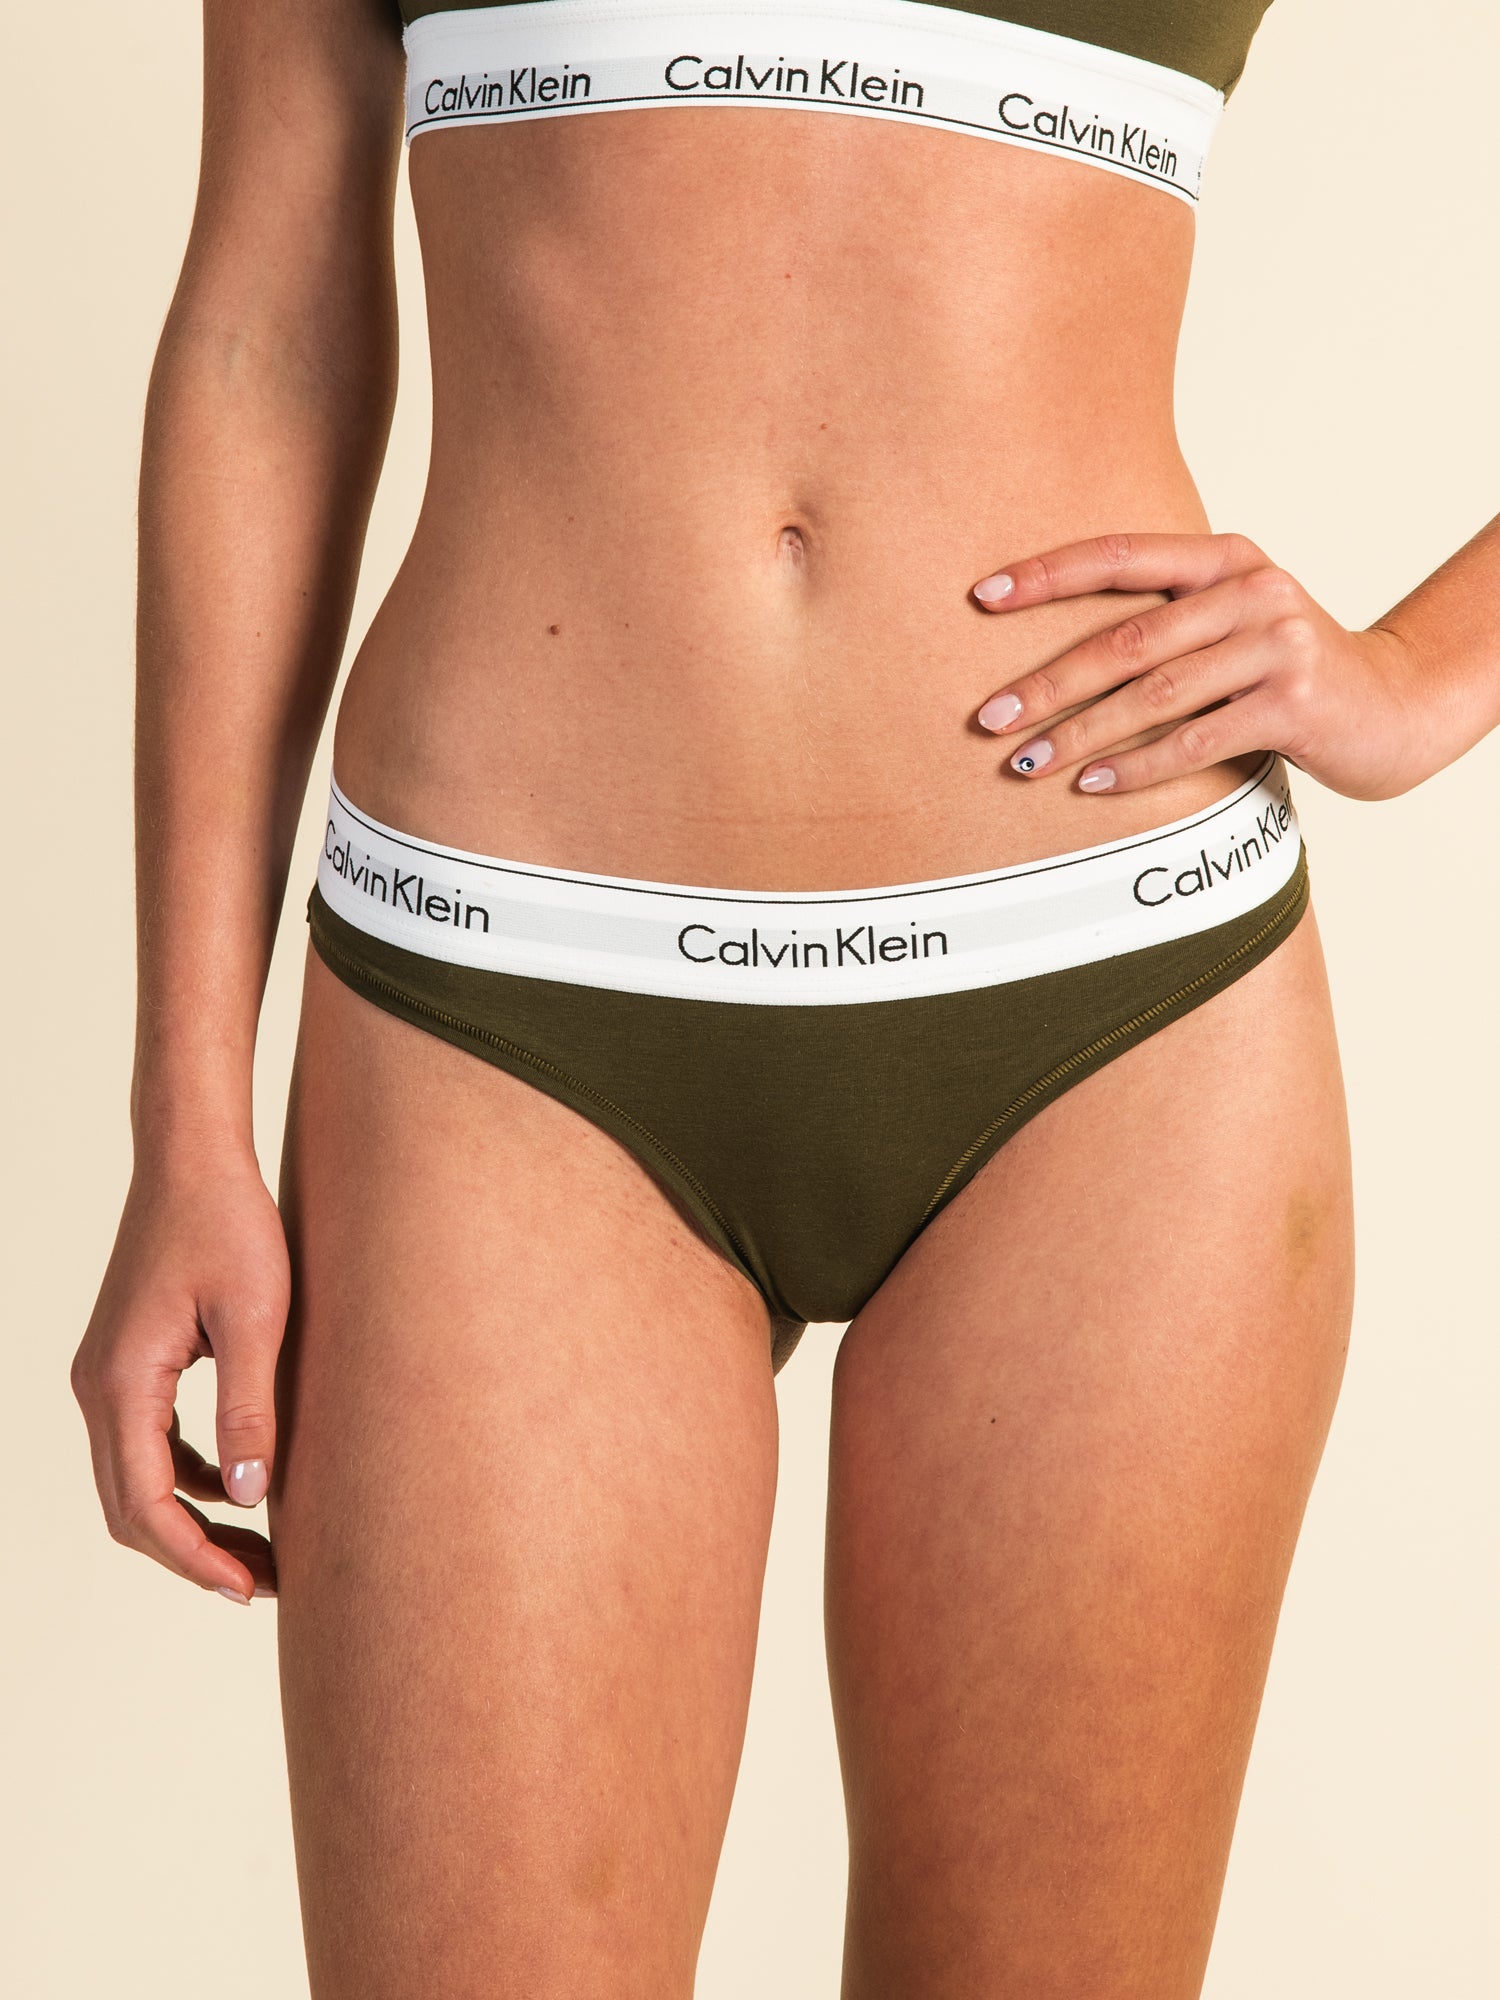 Calvin Klein Women's Modern Cotton Thong Panty - QF6581